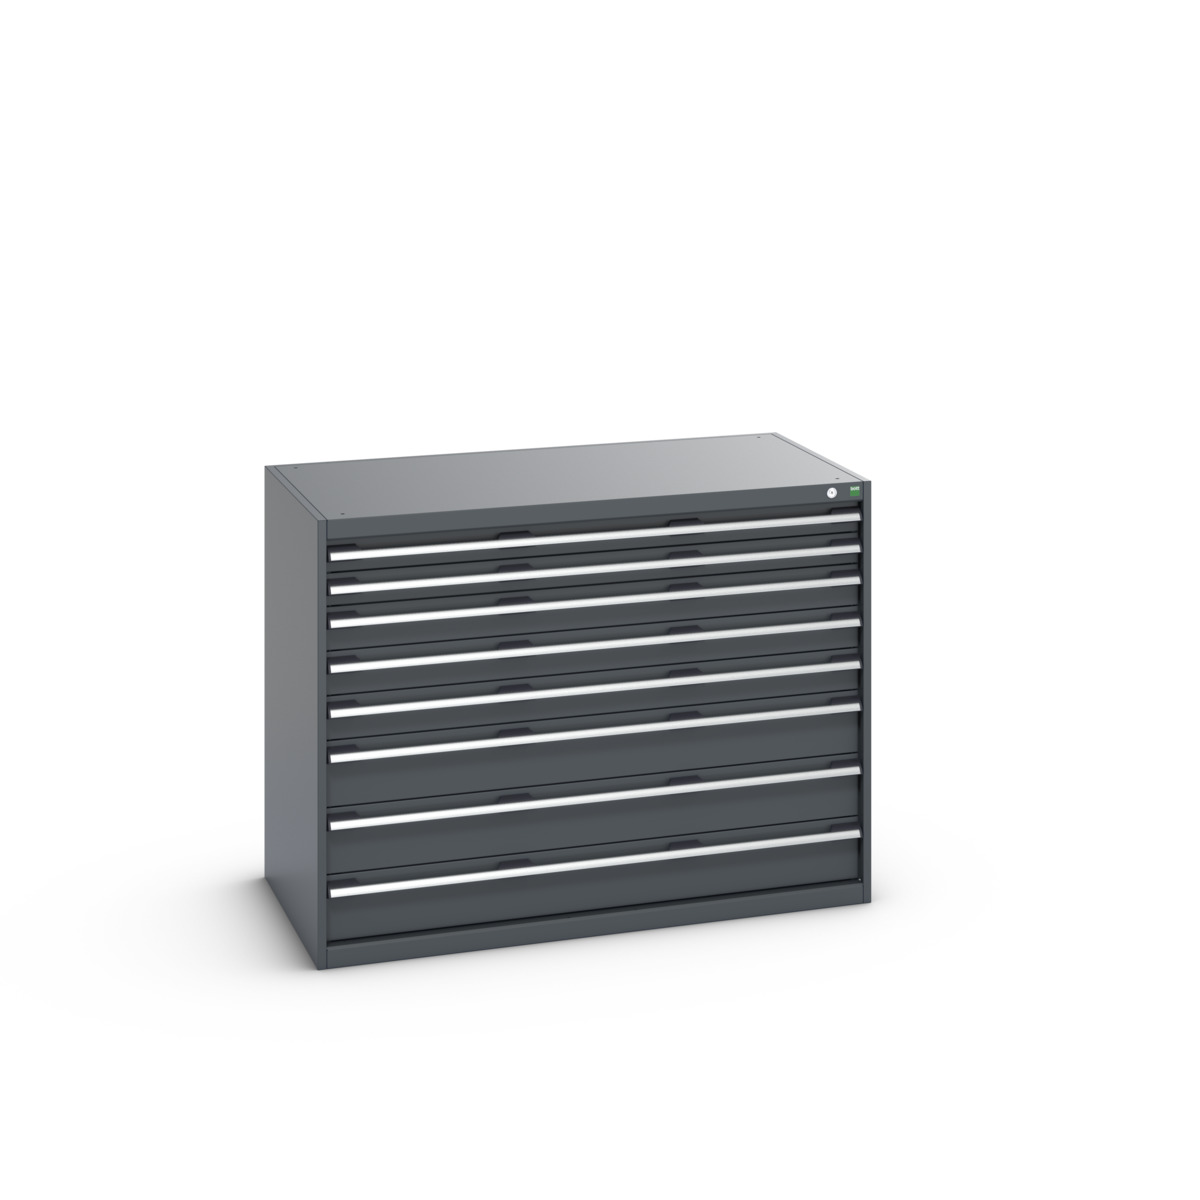 40030019.77V - cubio drawer cabinet